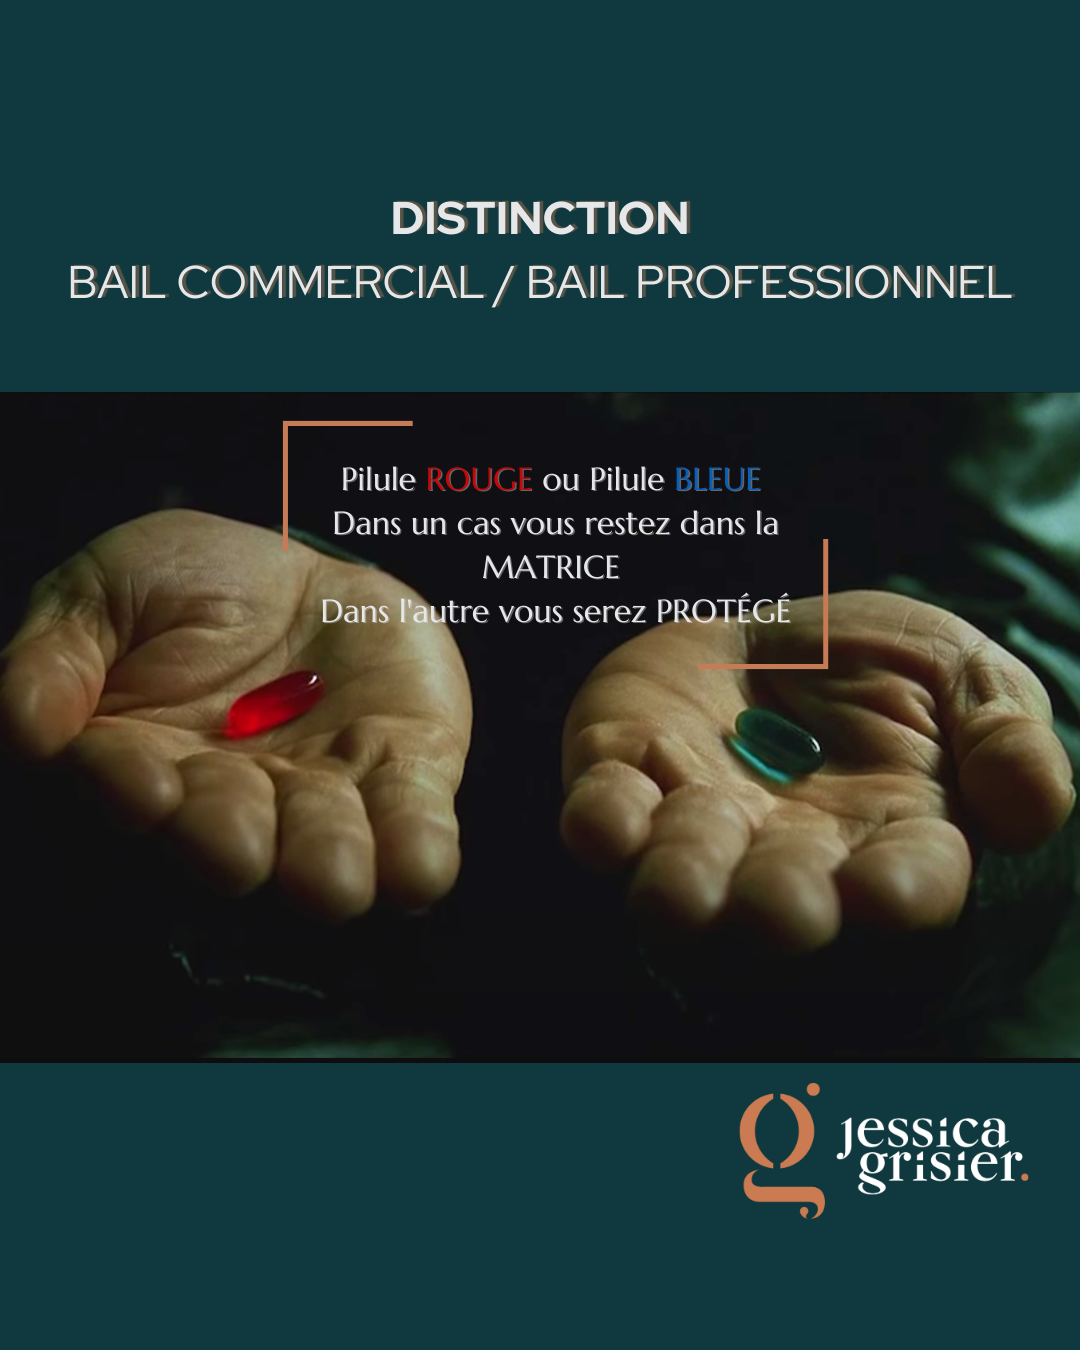 Bail_commercial_jessica_Grisier_Avocat_Distinction bail commercial_Bail Professionnel